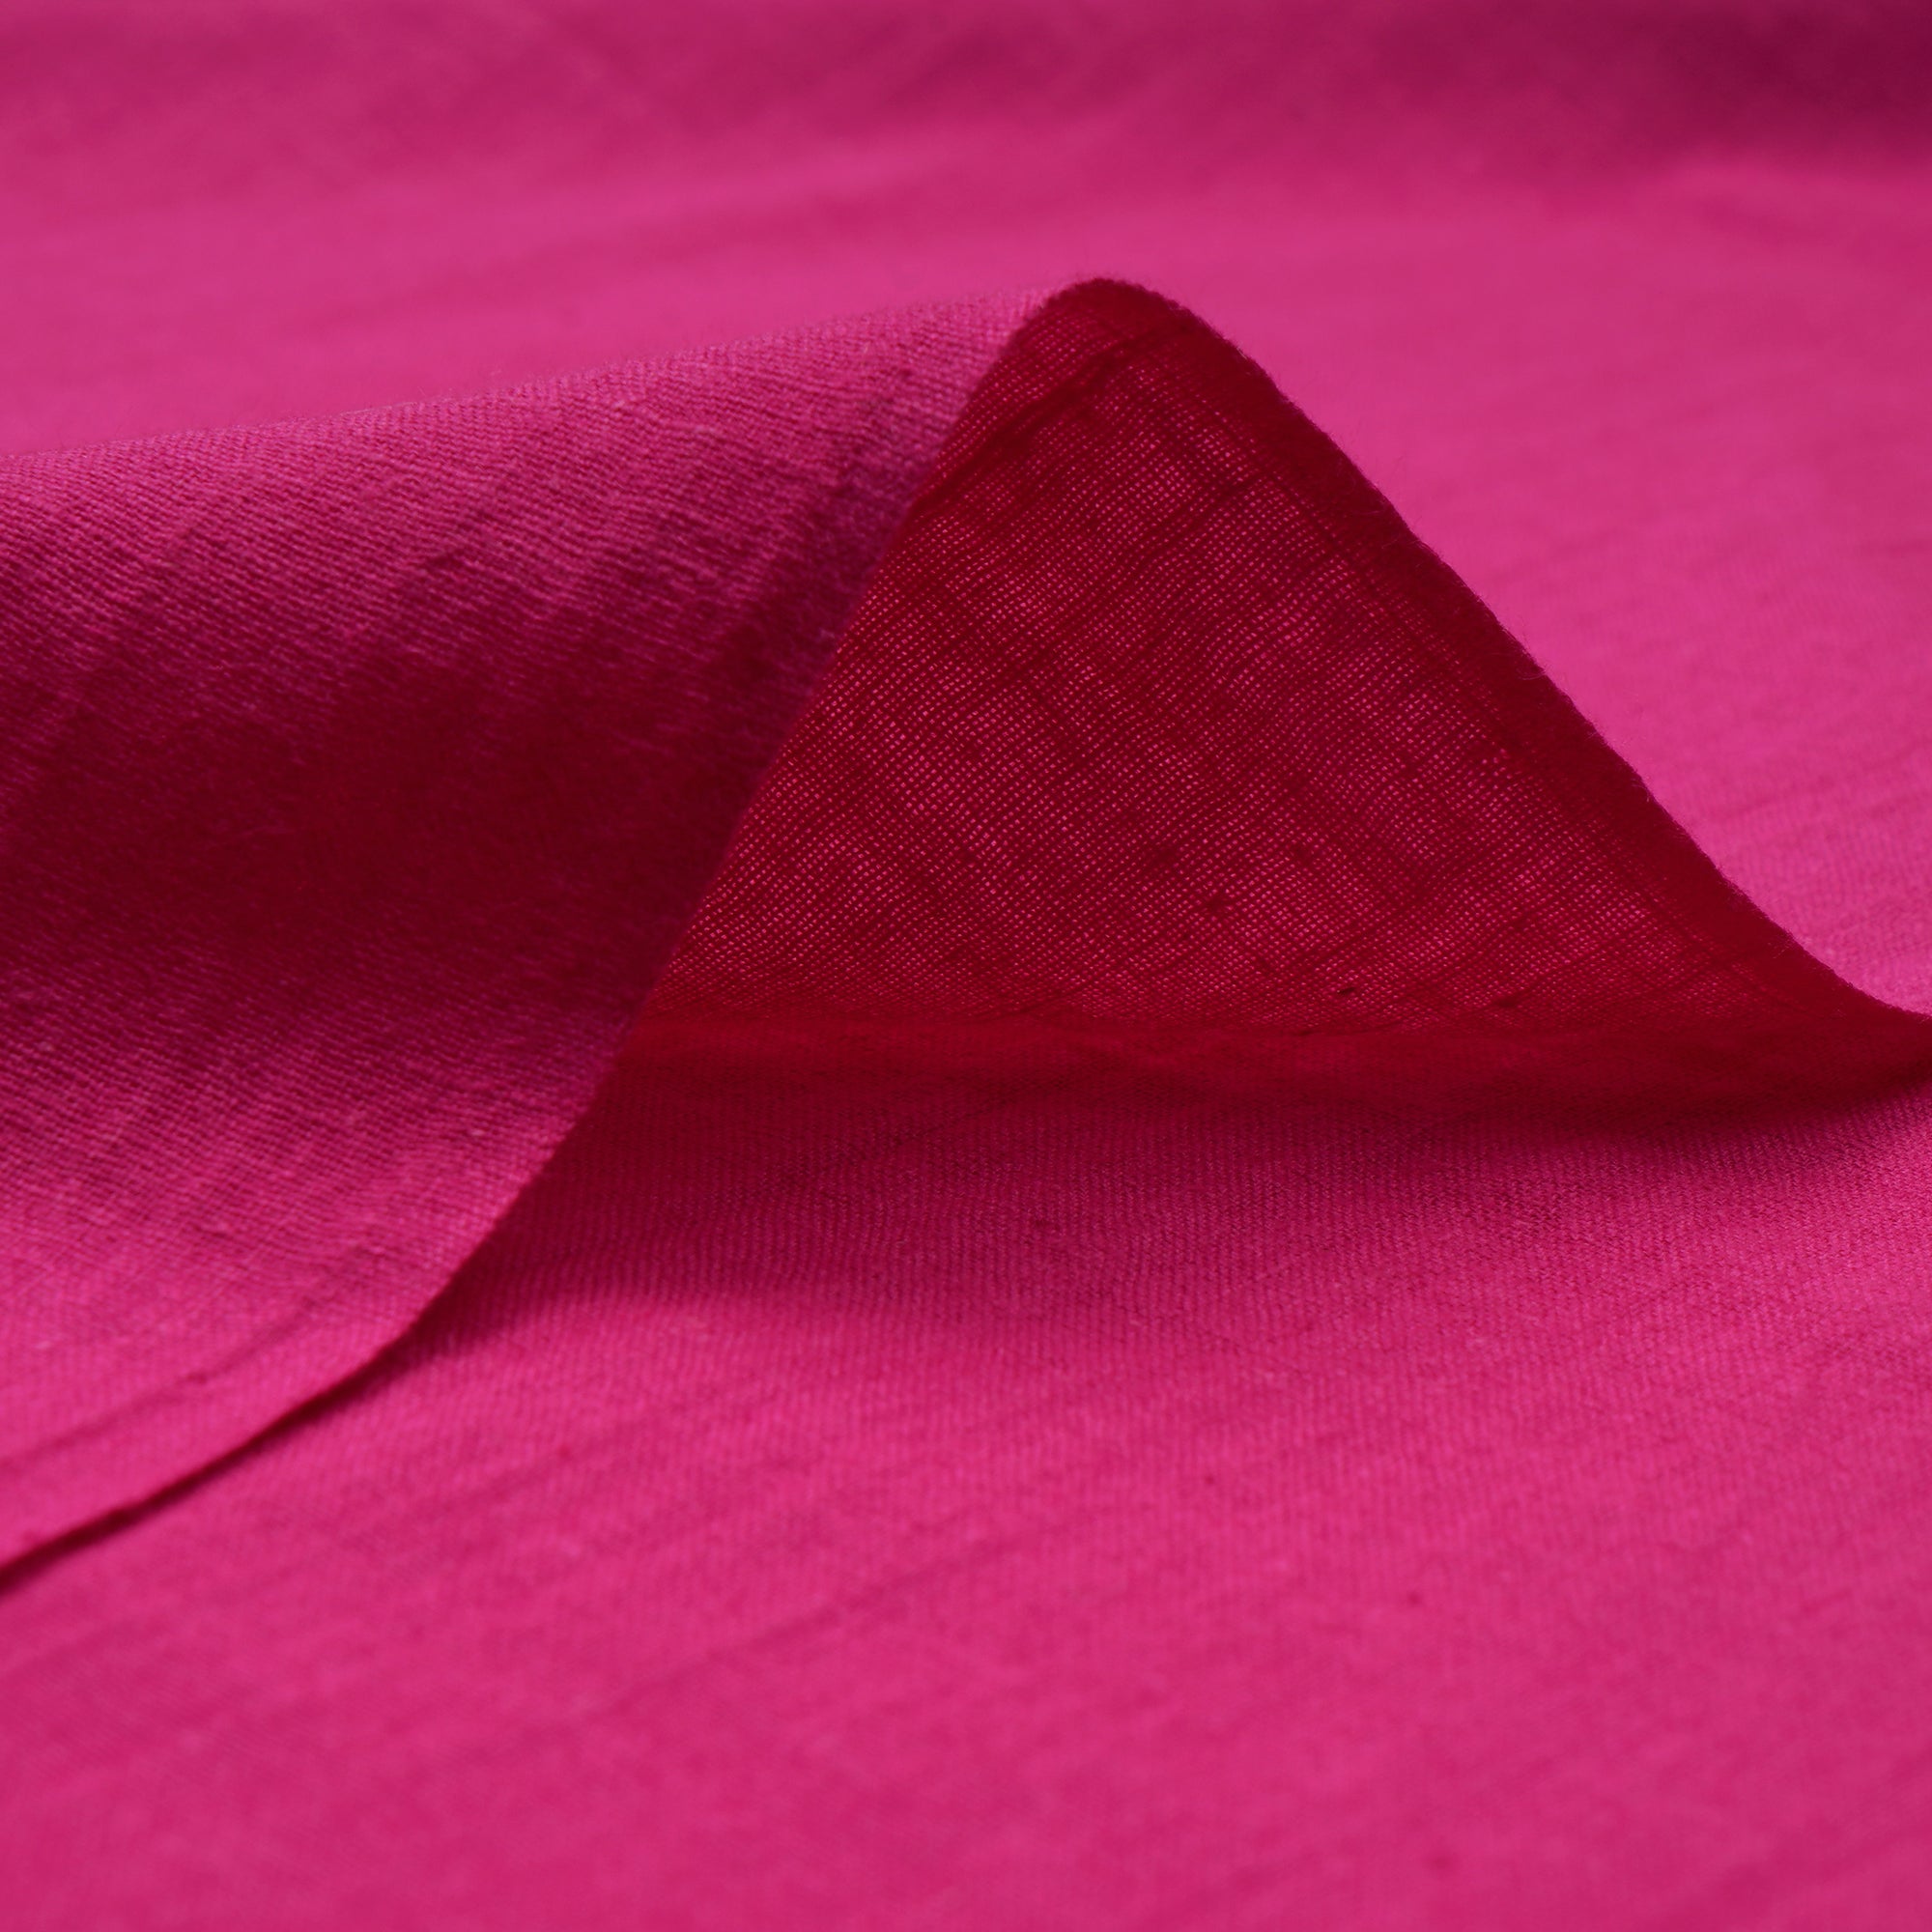 Dark Pink Handspun Handwoven Muslin Cotton Fabric